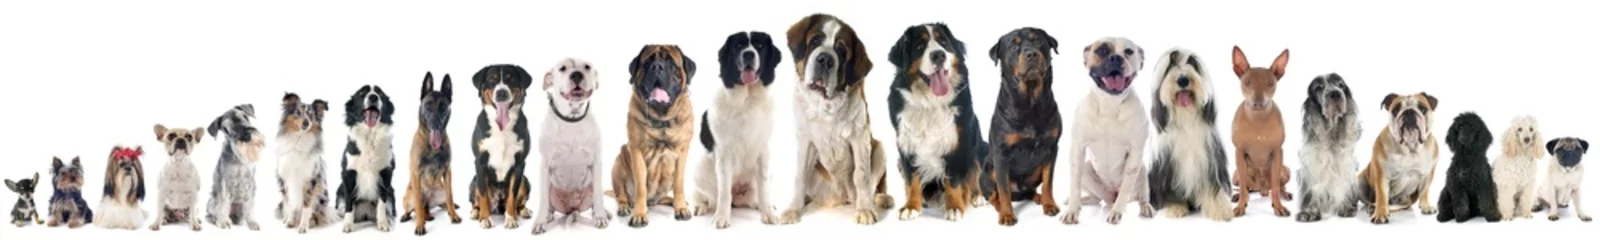 Keuken foto achterwand Hond groep honden